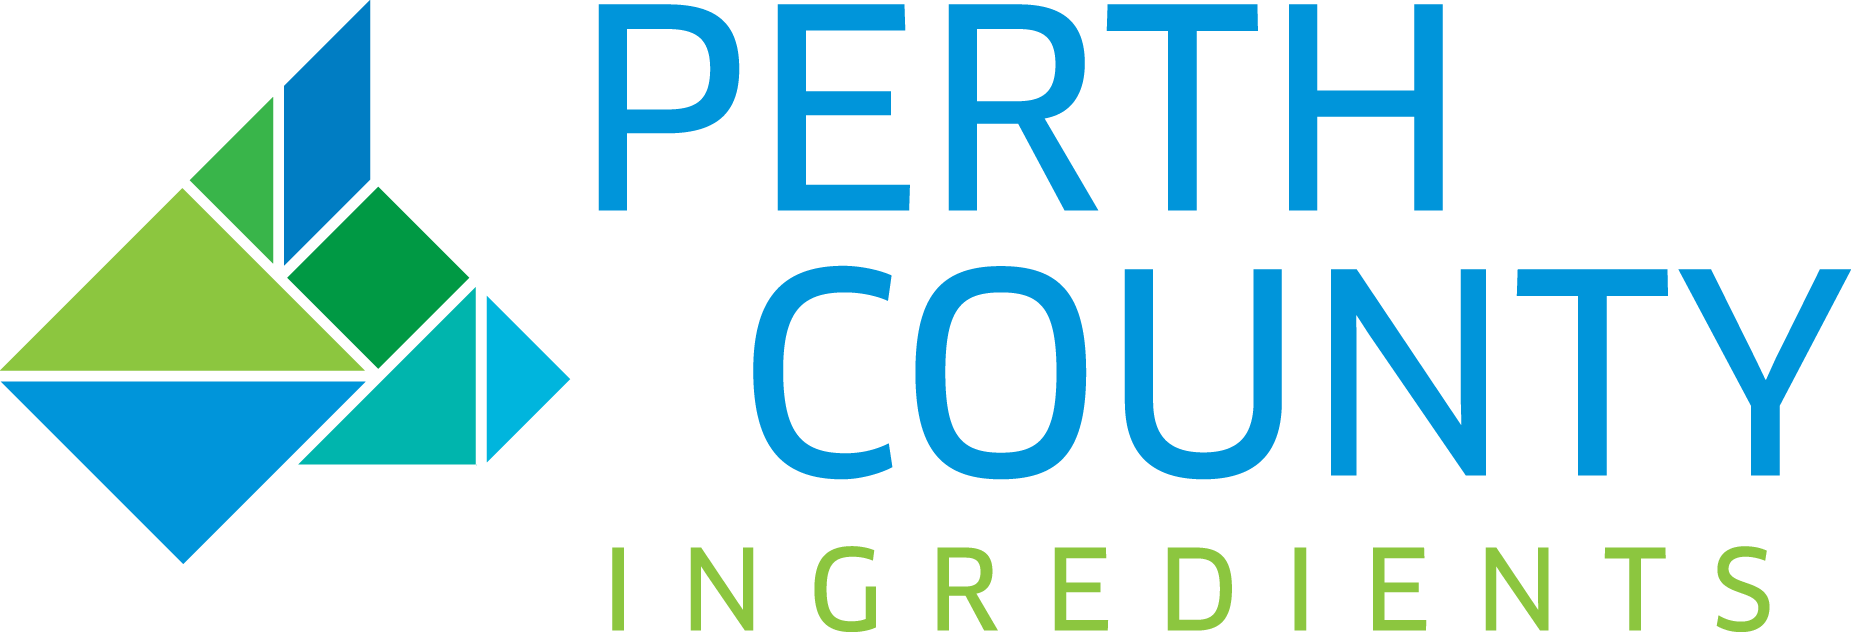 PerthCounty logo